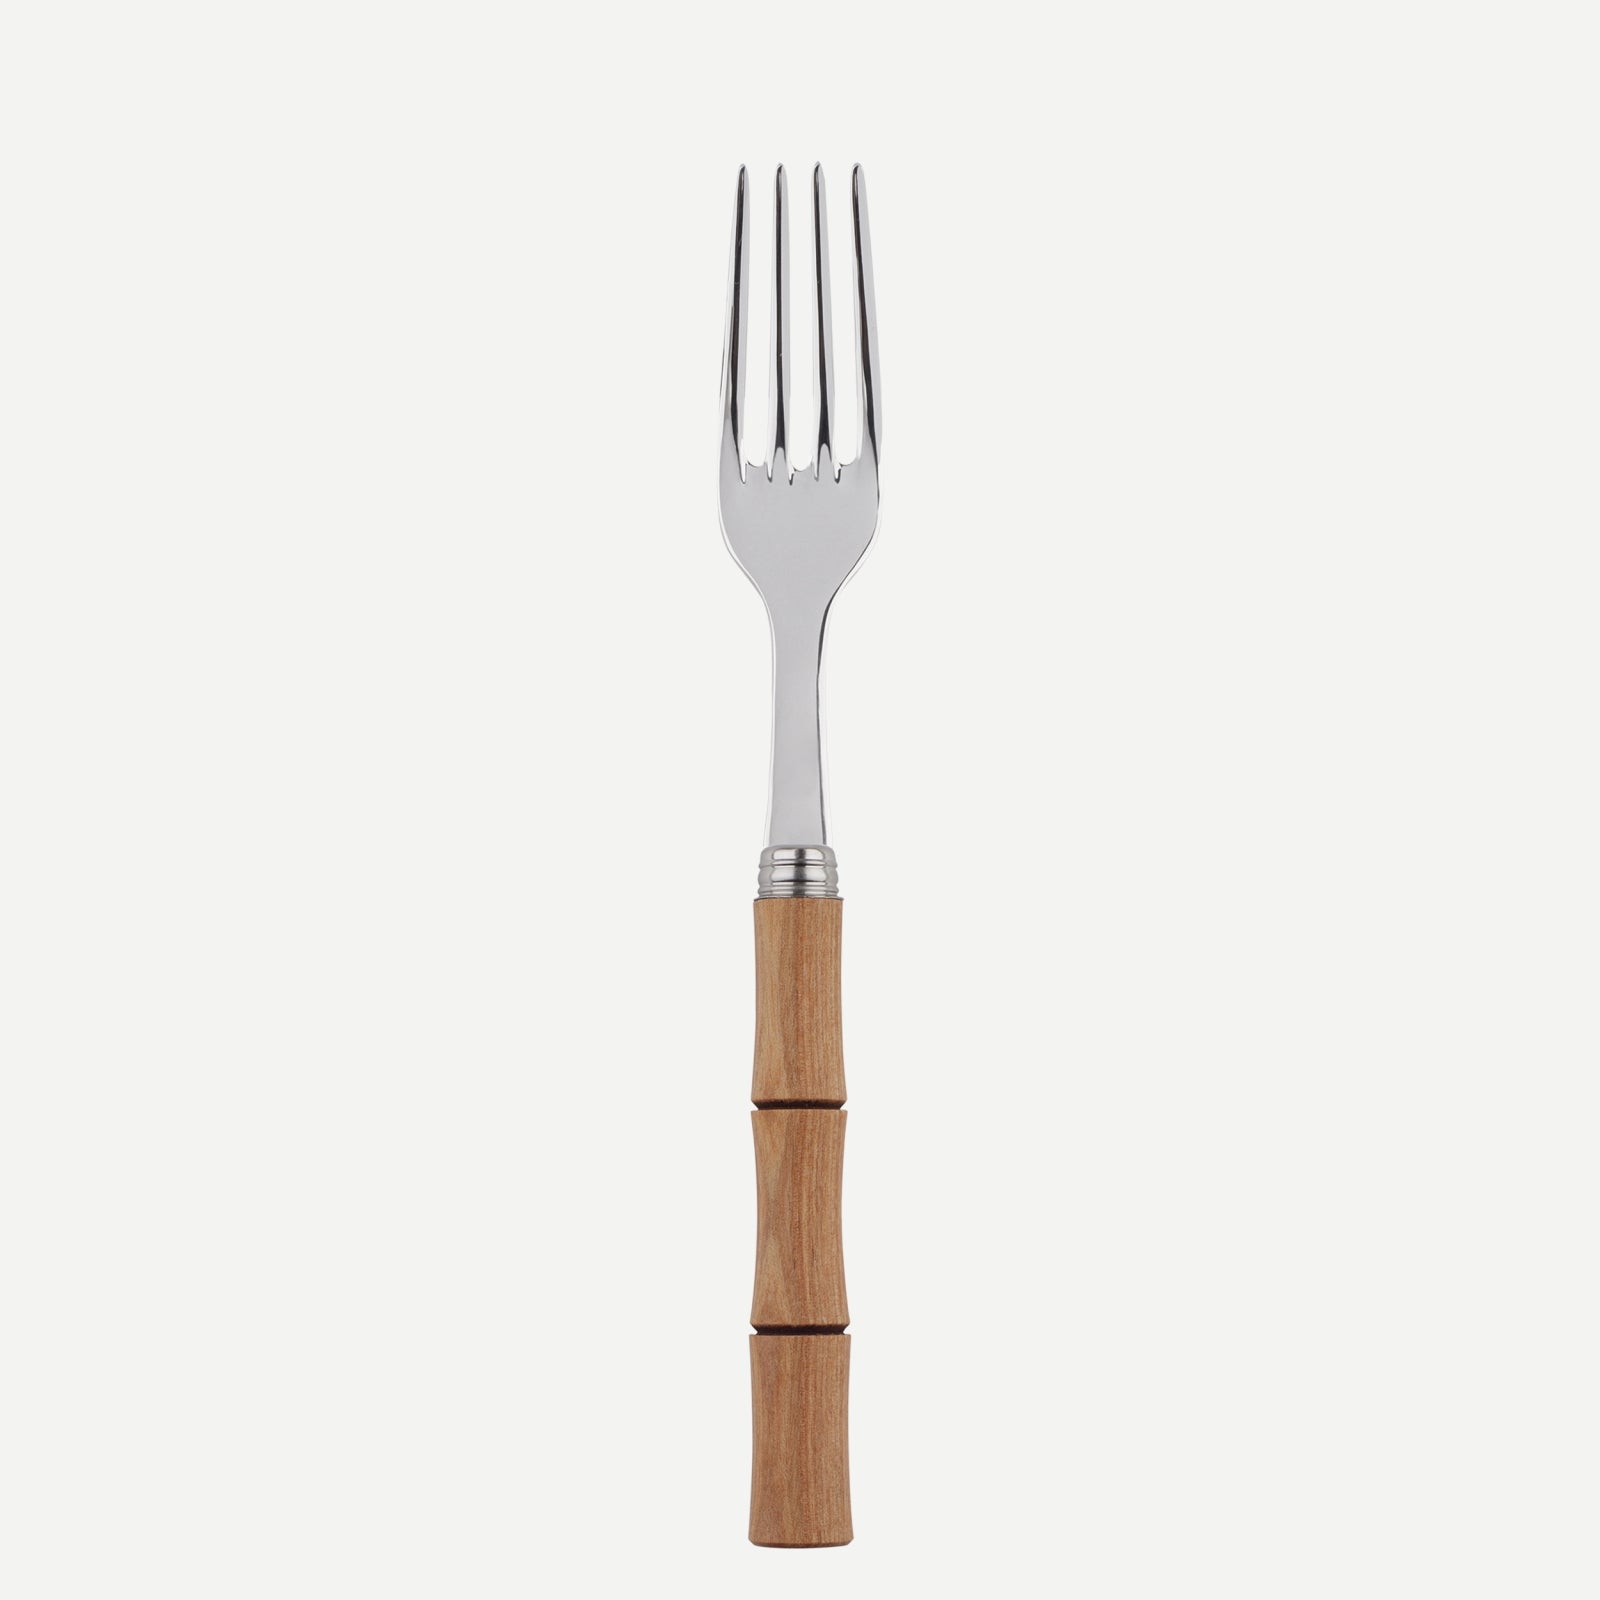 Dinner fork - Bamboo - Light press wood